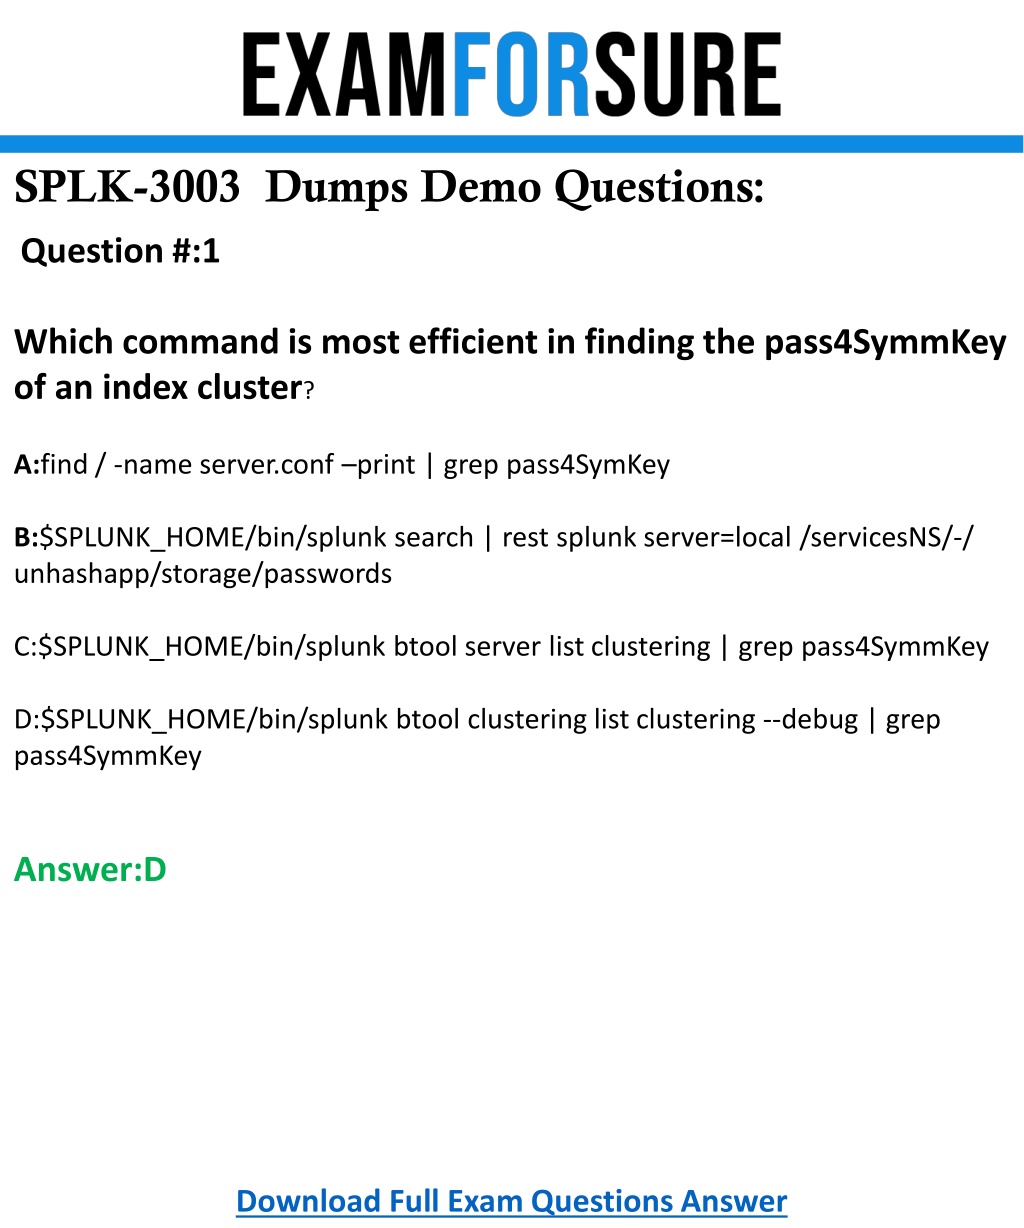 SPLK-3003 Online Prüfung